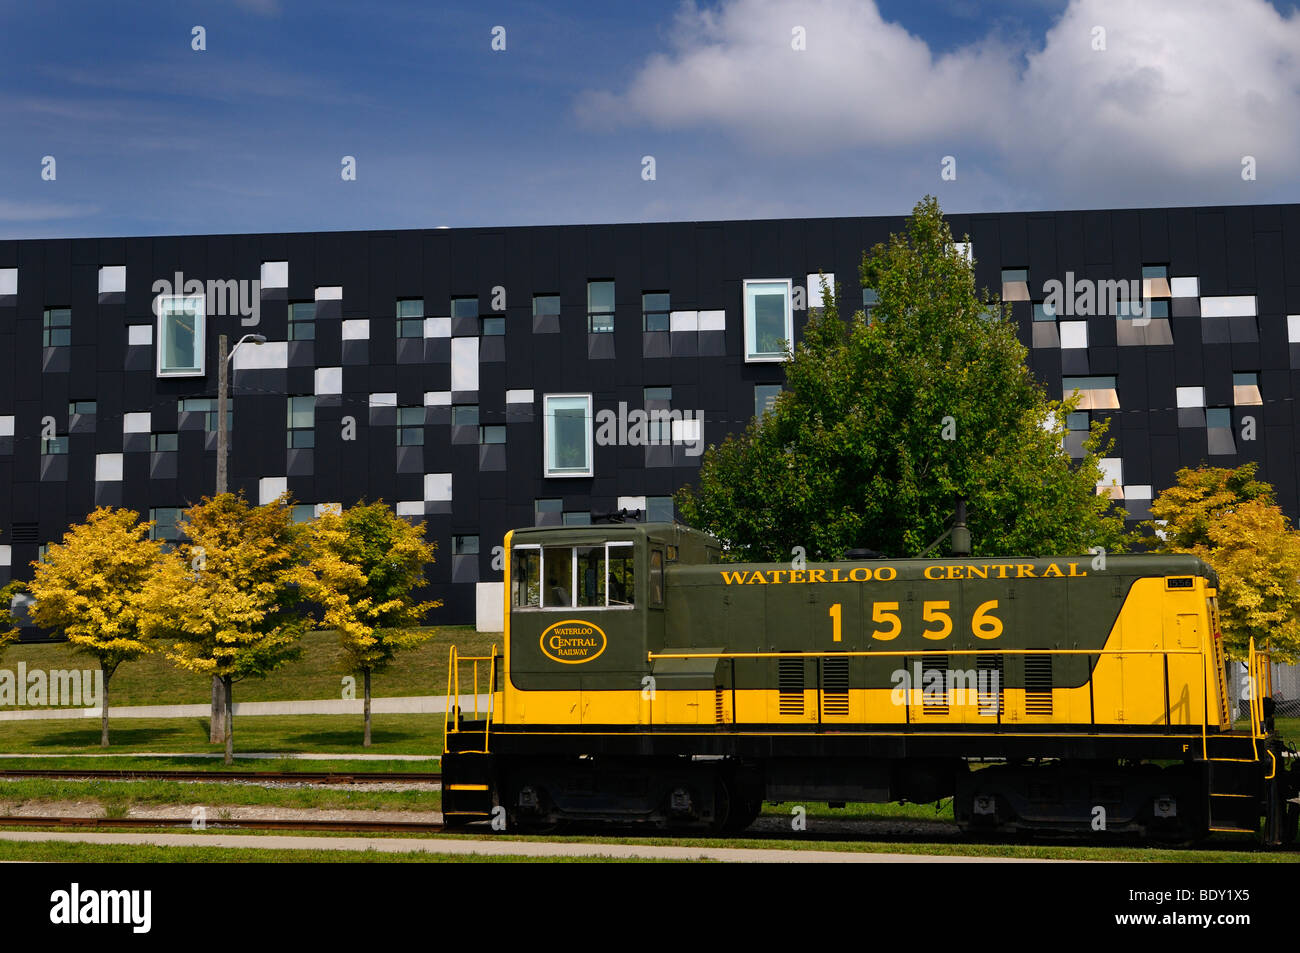 Jaune Vert waterloo historique central railway train voiture moderne avec la physique théorique de l'Institut Perimeter building canada Kitchener Waterloo Banque D'Images